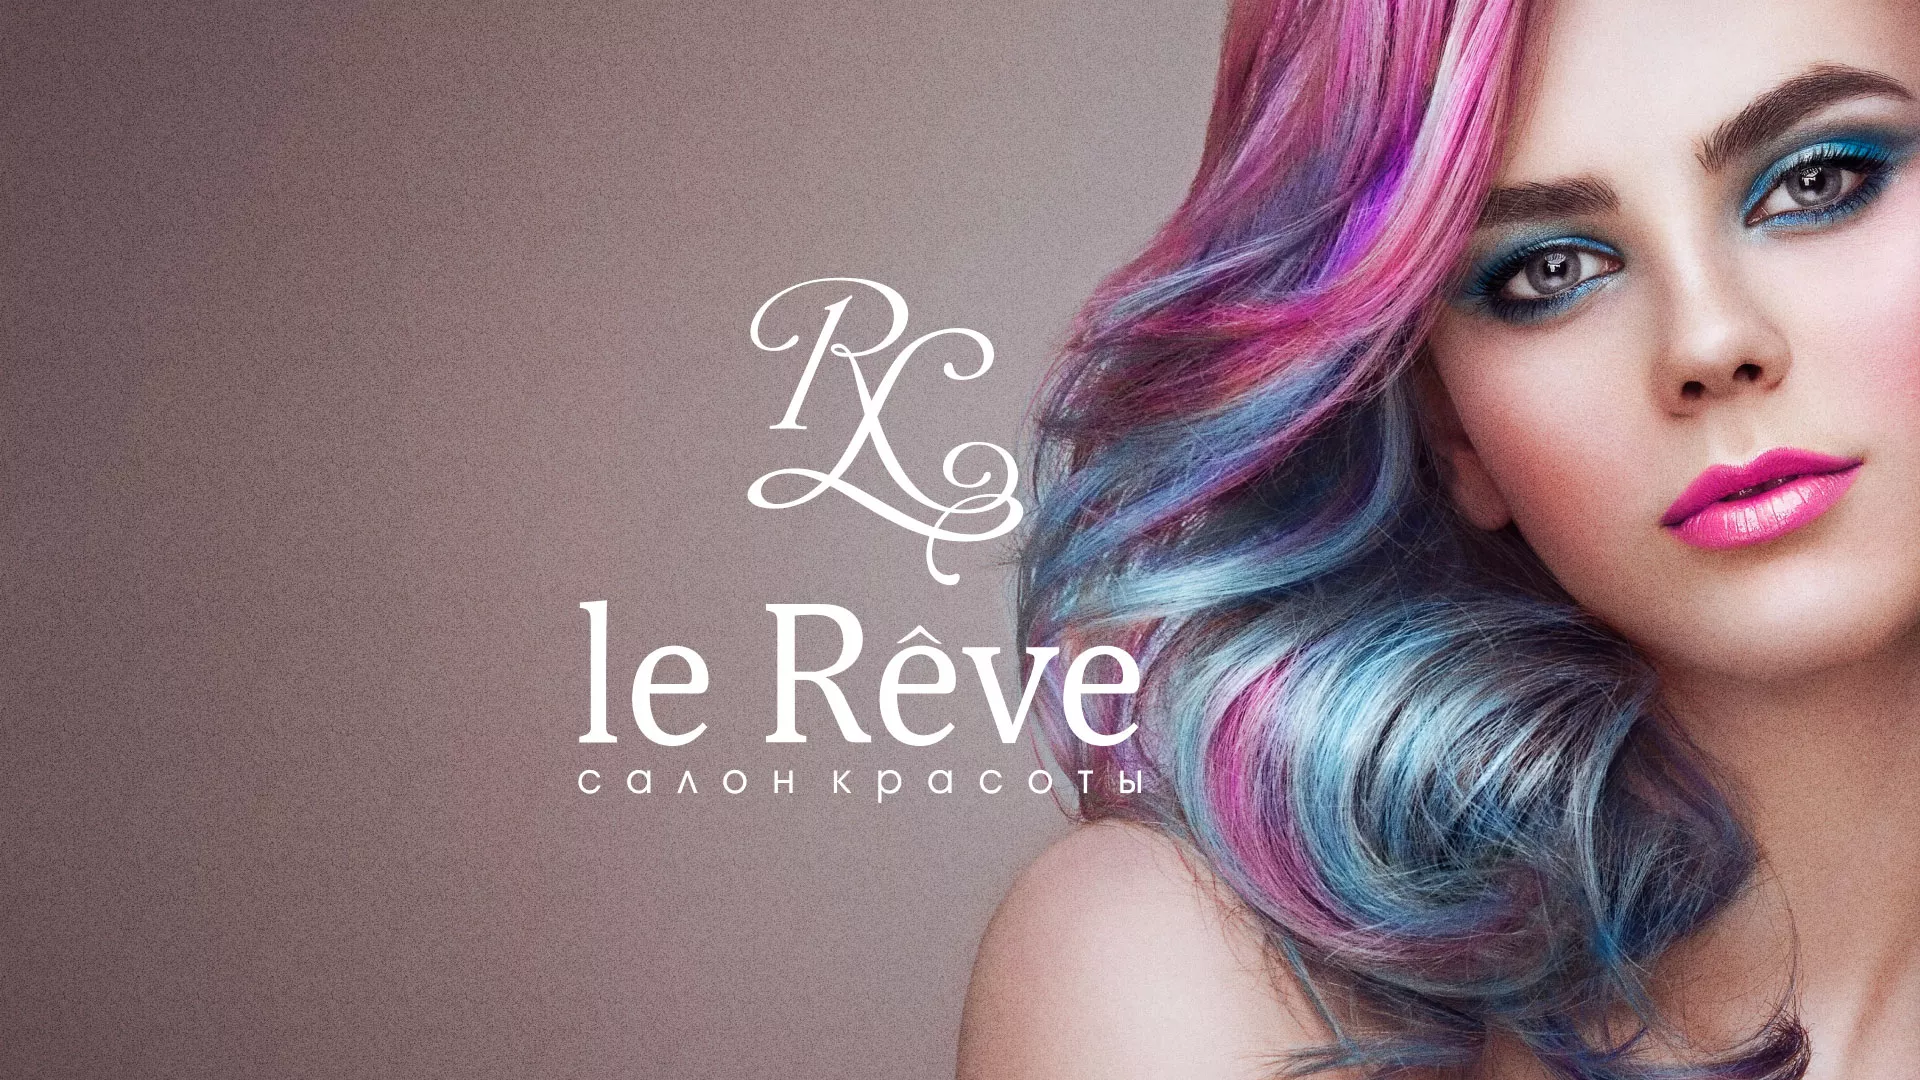 Создание сайта для салона красоты «Le Reve» в Узловой